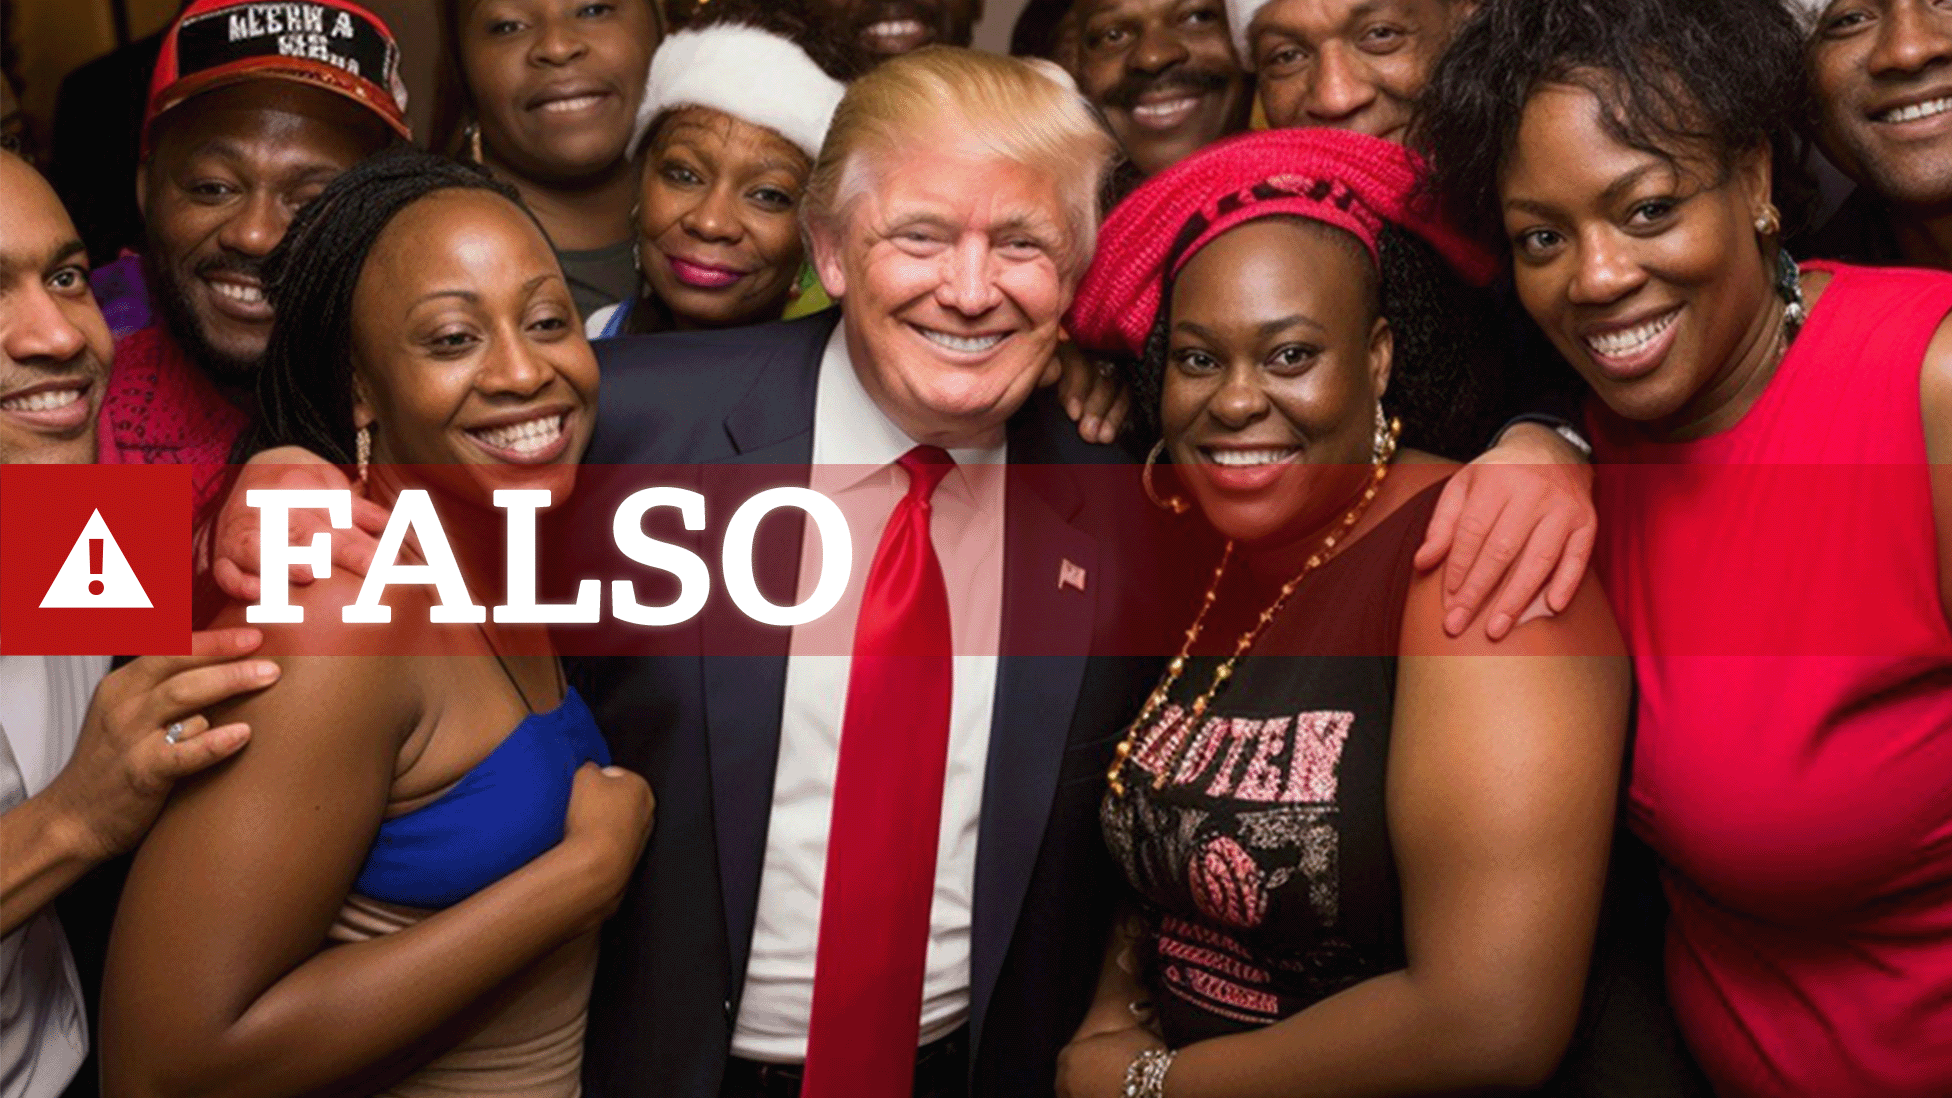 Las imágenes falsas creadas con IA para intentar atraer el apoyo de los votantes negros hacia Trump